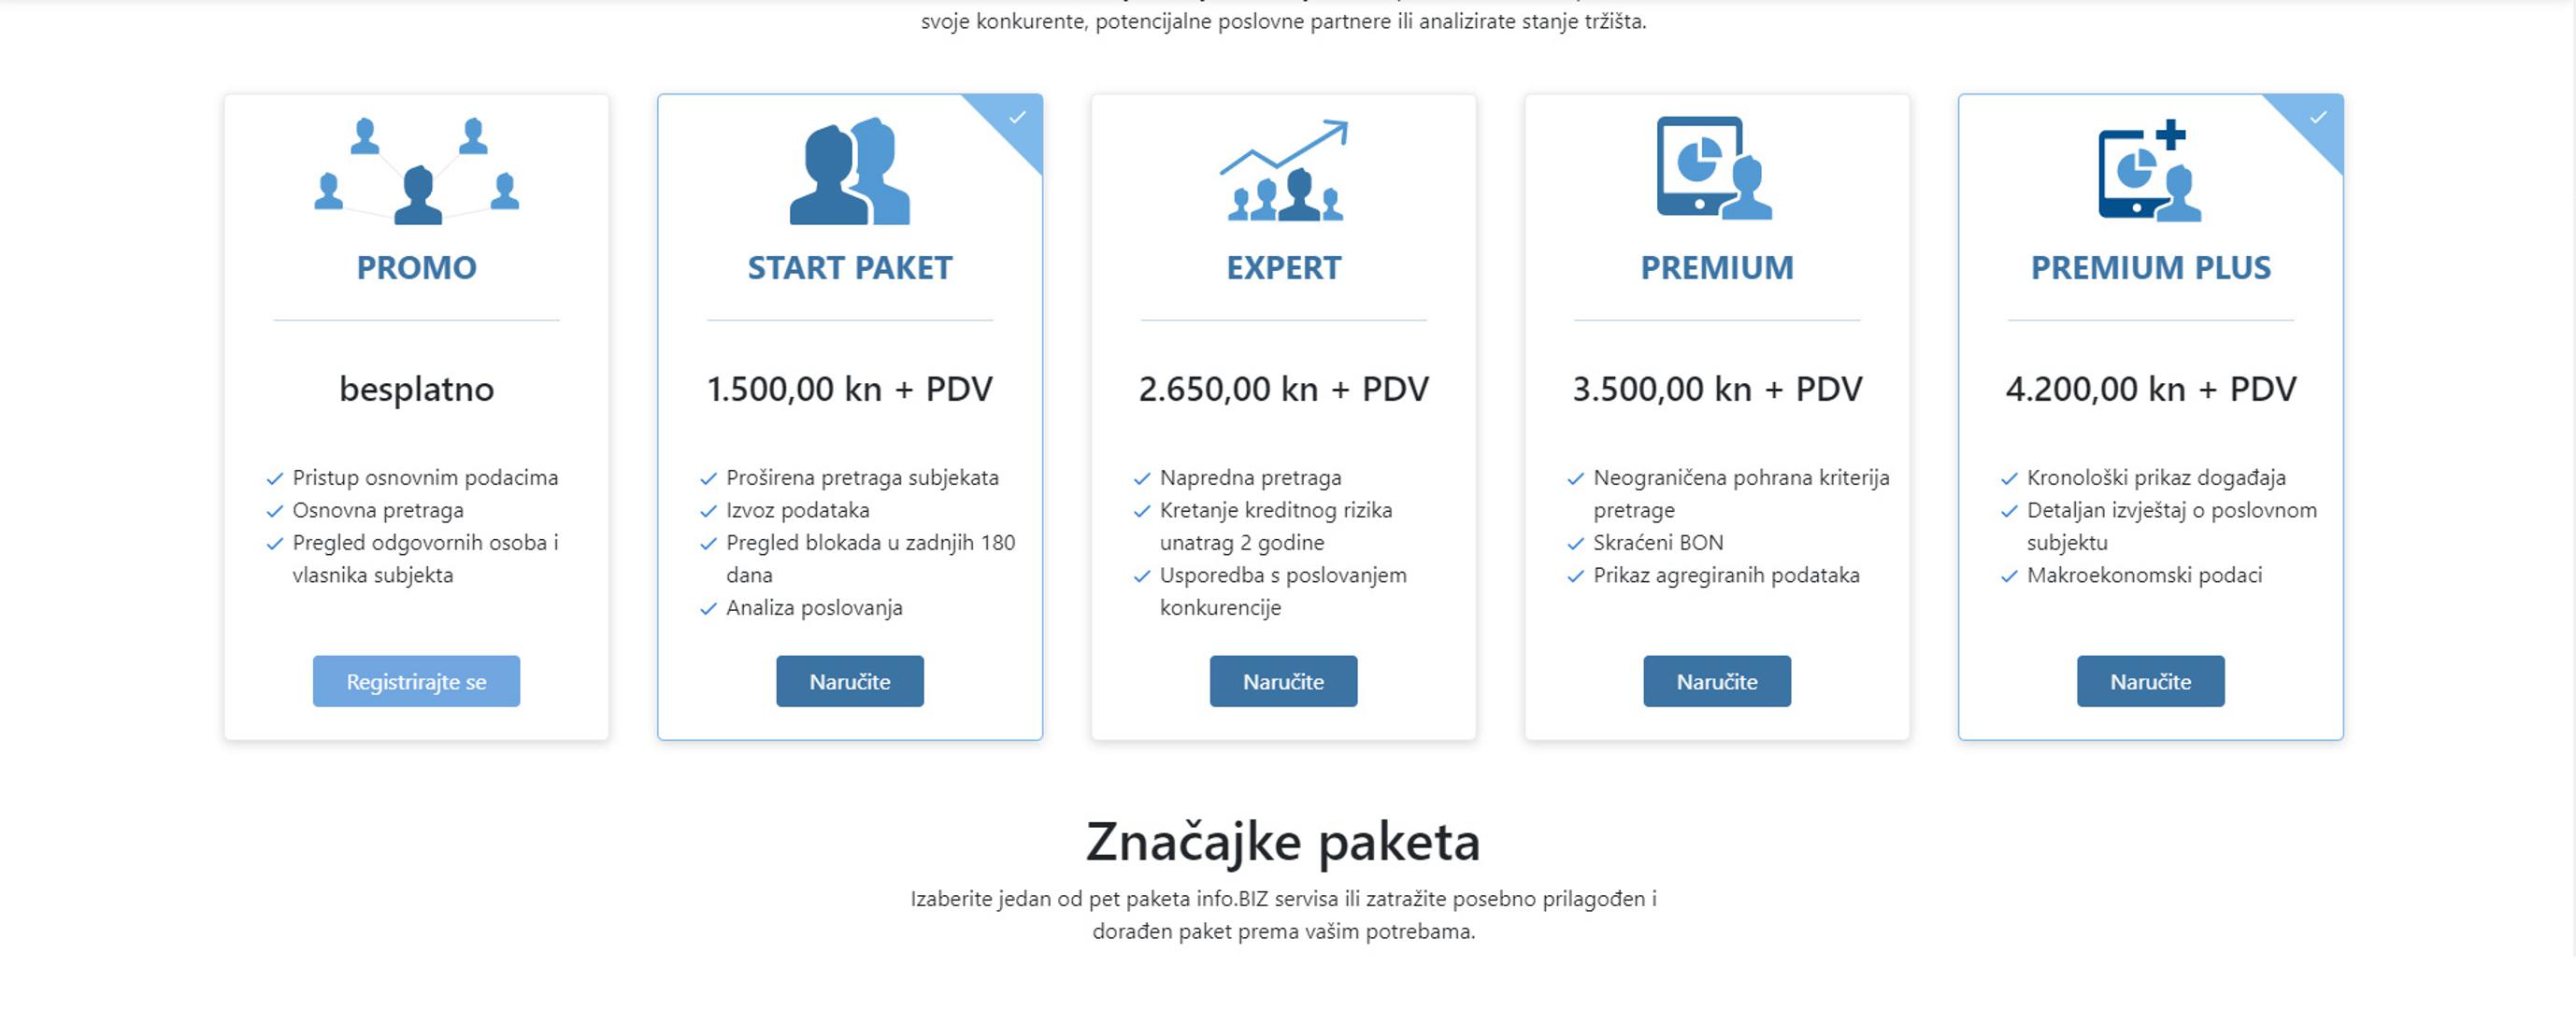 Korisnički paketi Info.BIZ portala